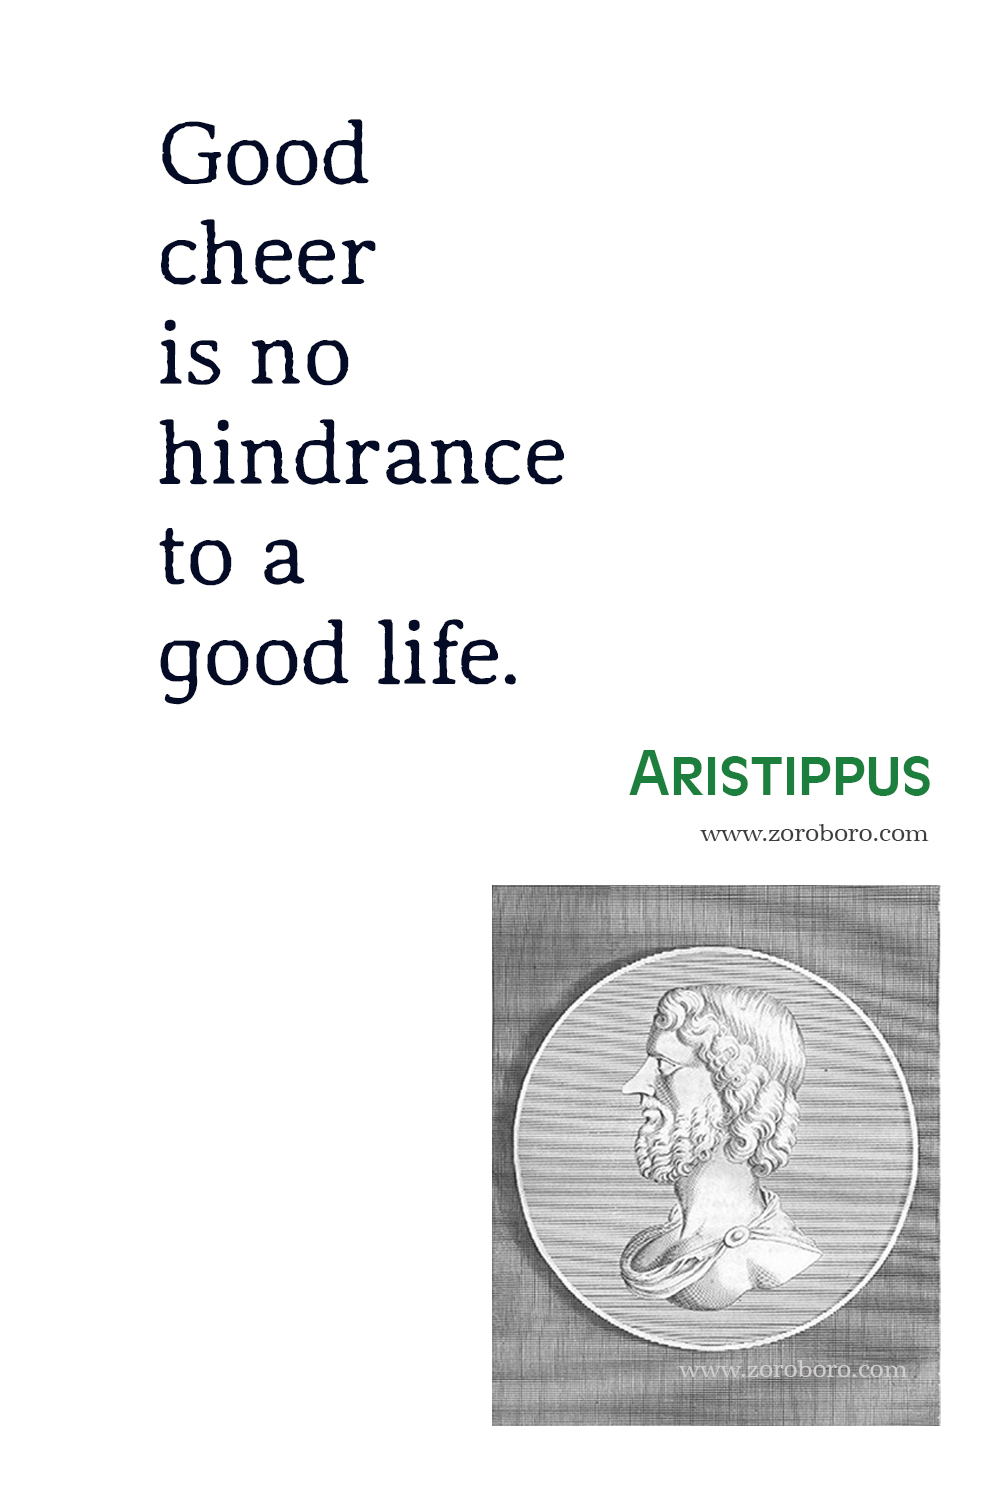 Aristippus Quotes, Aristippus Philosophy, Aristippus Wallpaper, Aristippus Image, Aristippus Quotes.